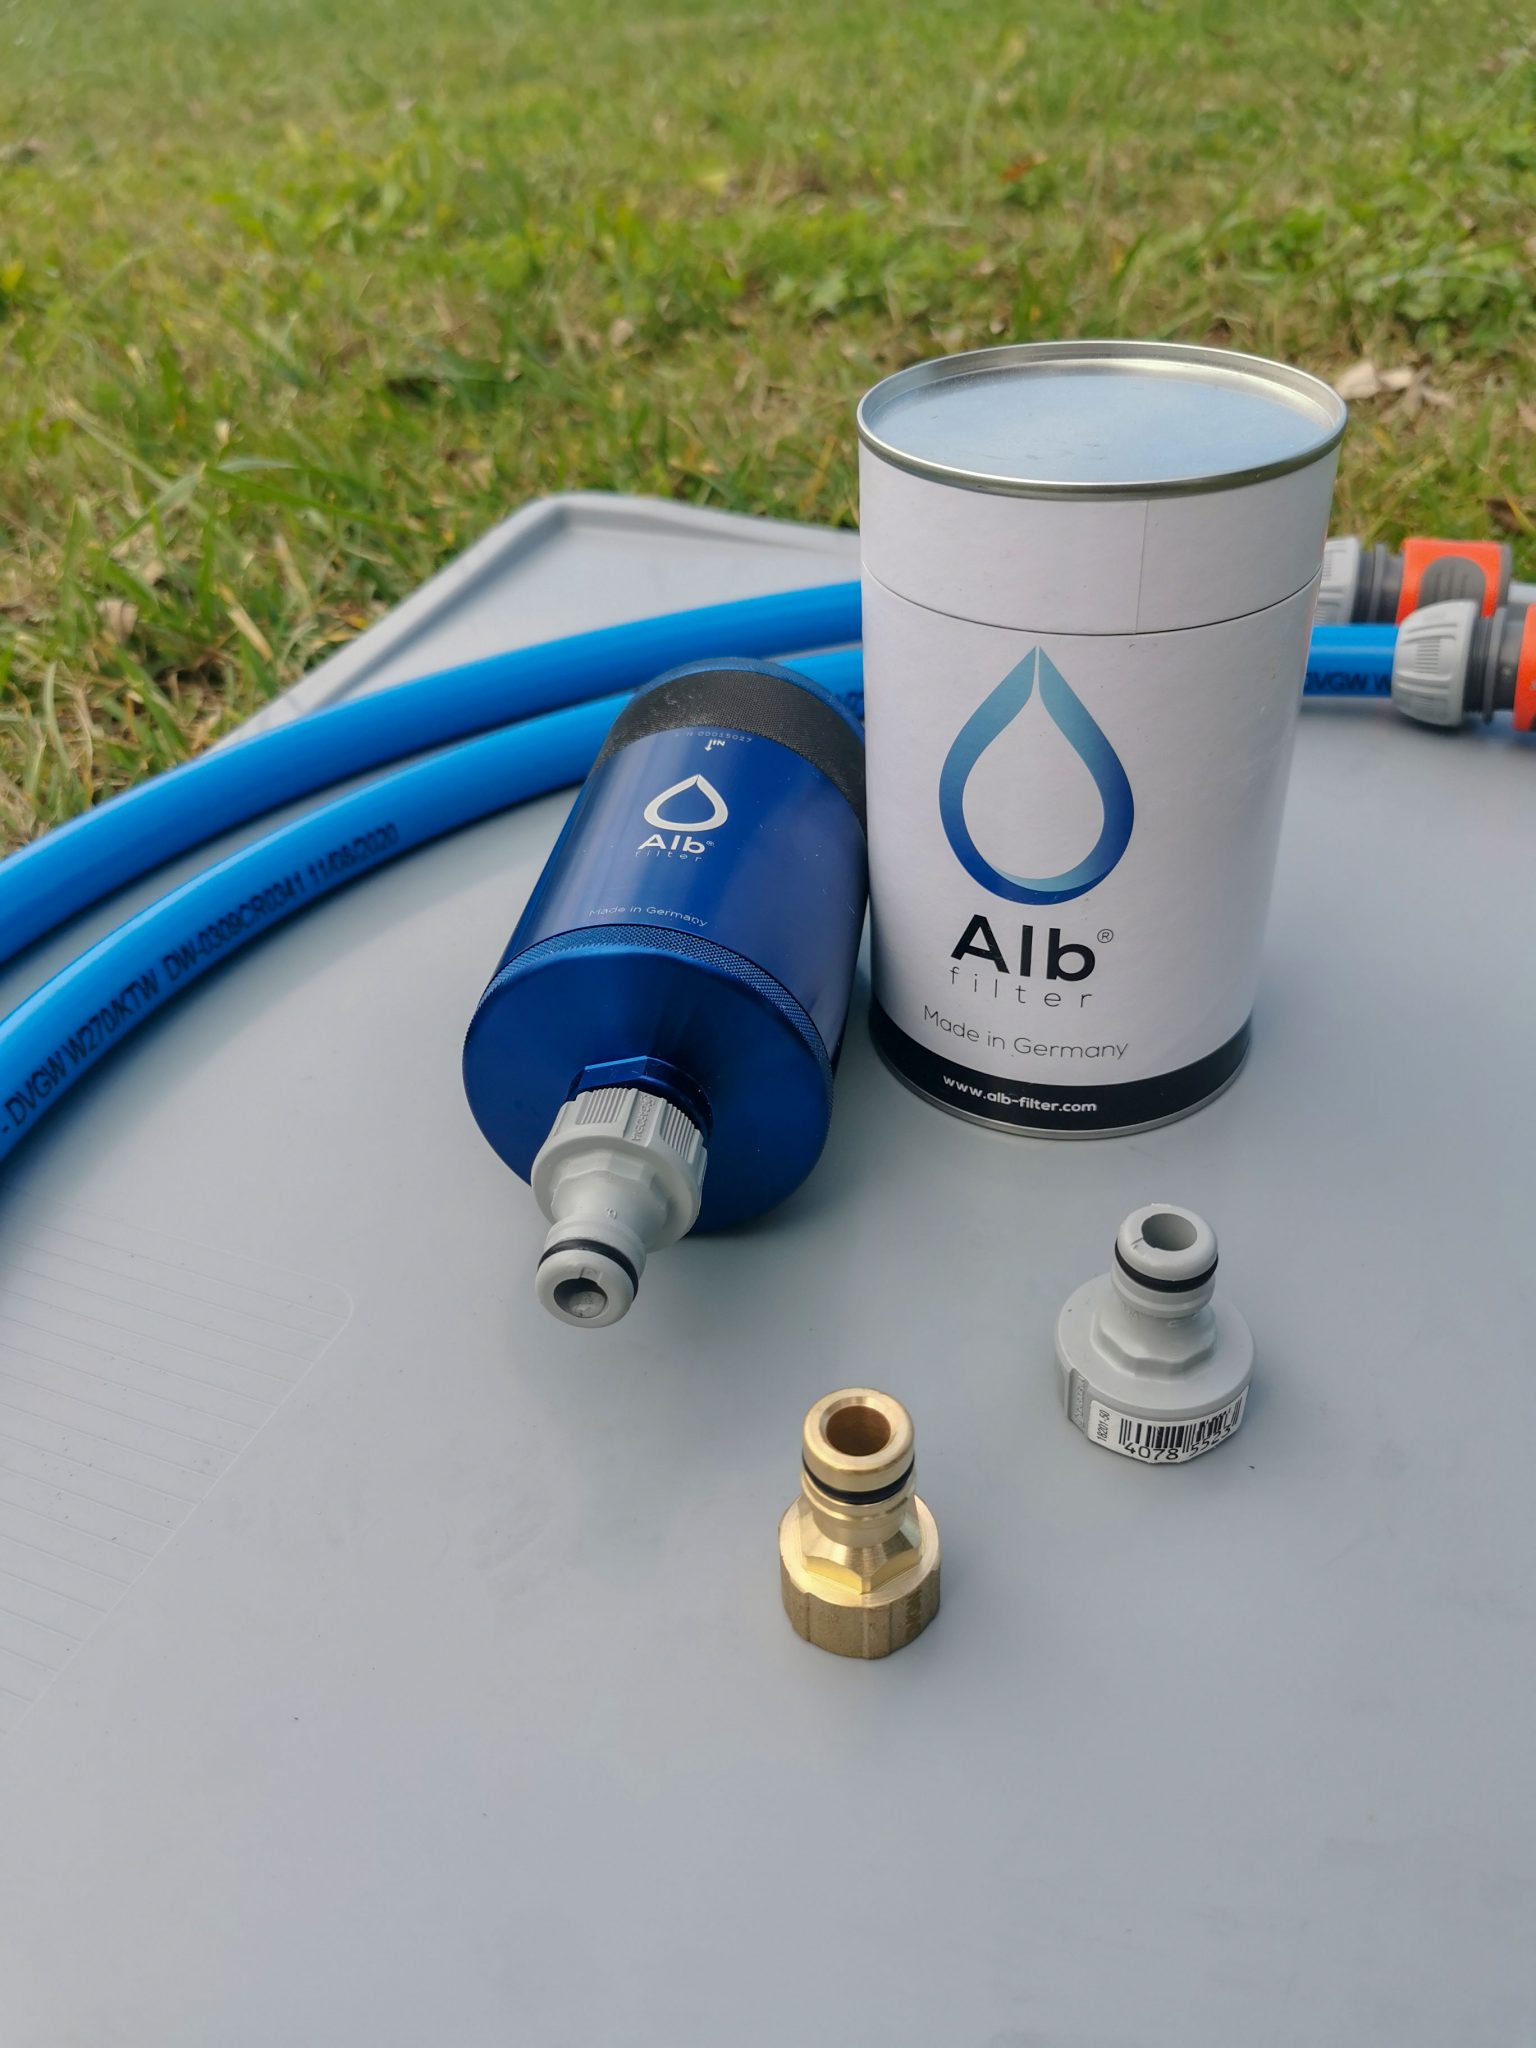 Bestes Trinkwasser auch unterwegs – Wasserfilter von Alb Filter